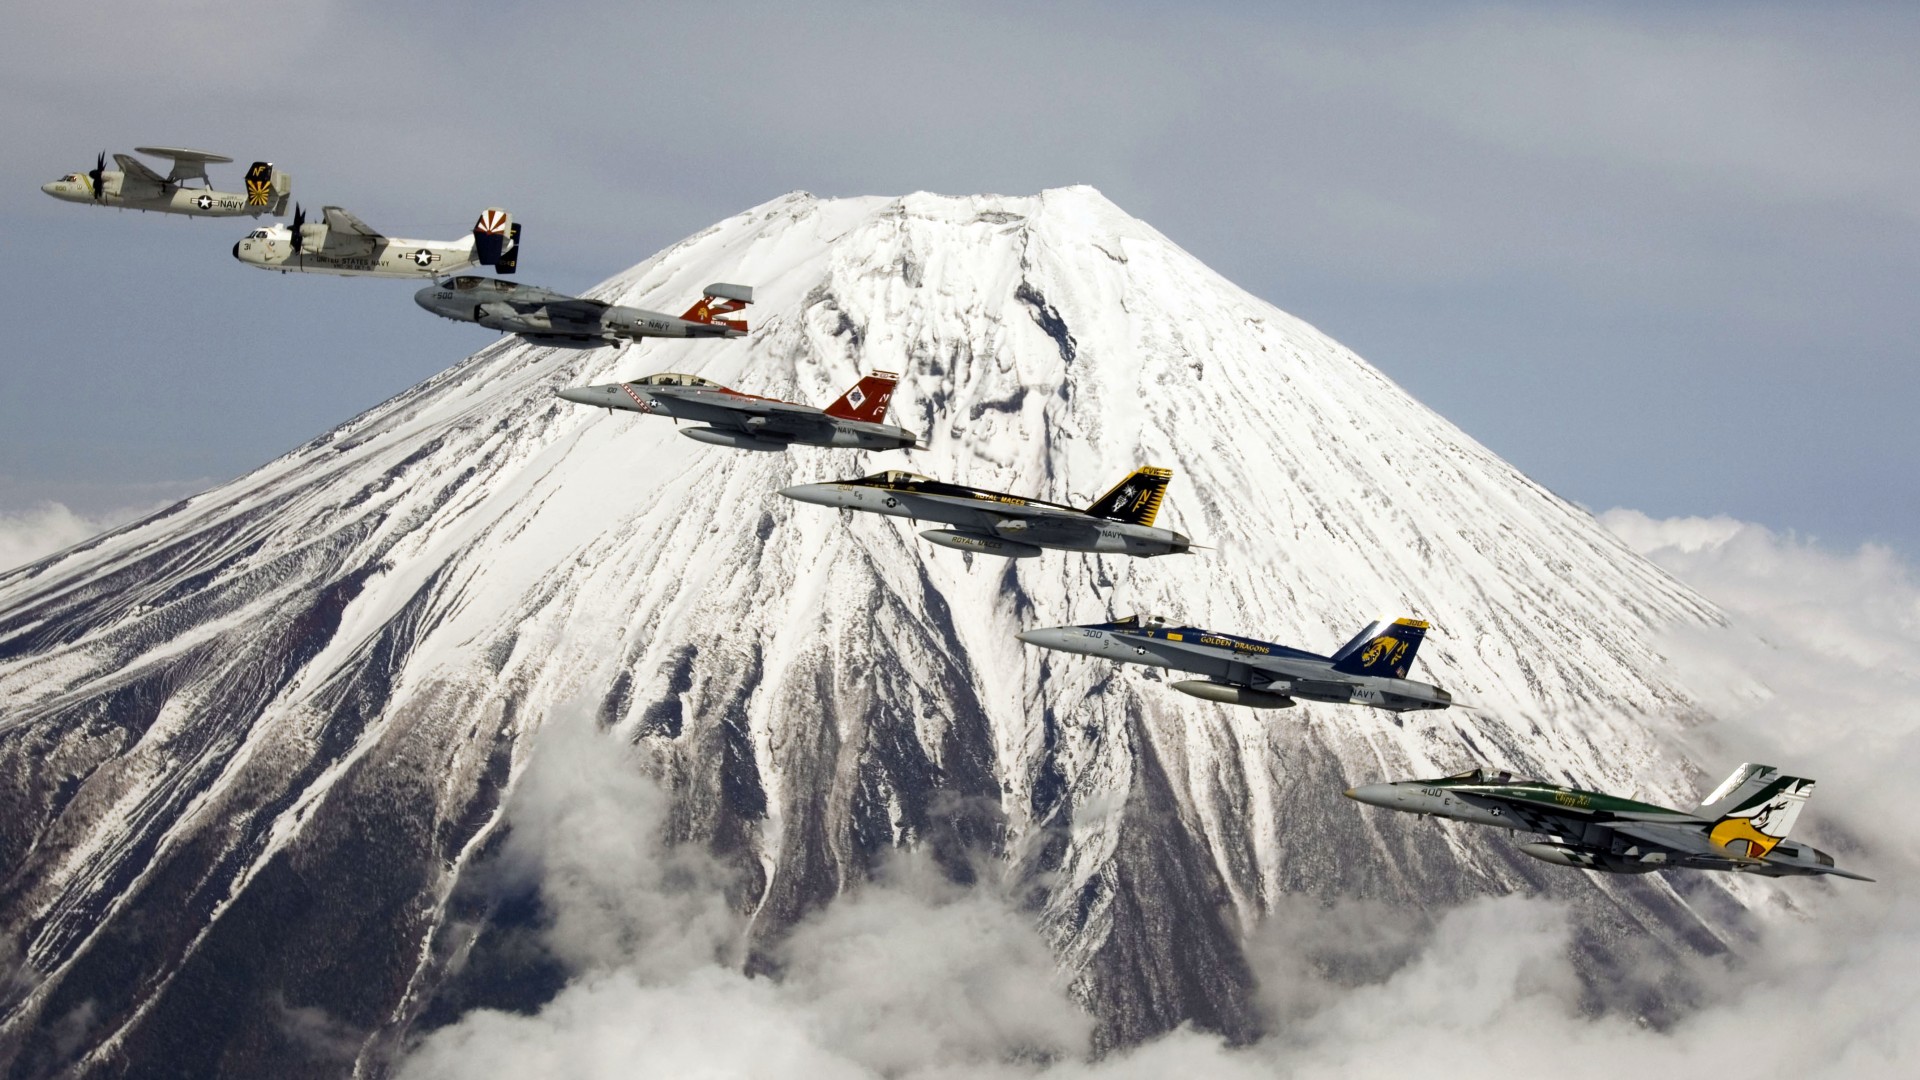 ВВС США, показные выступления, горы, Фудзи, U.S. Navy, aircraft, carrier, jet, fighter, mountain, Fuji, Japan (horizontal)